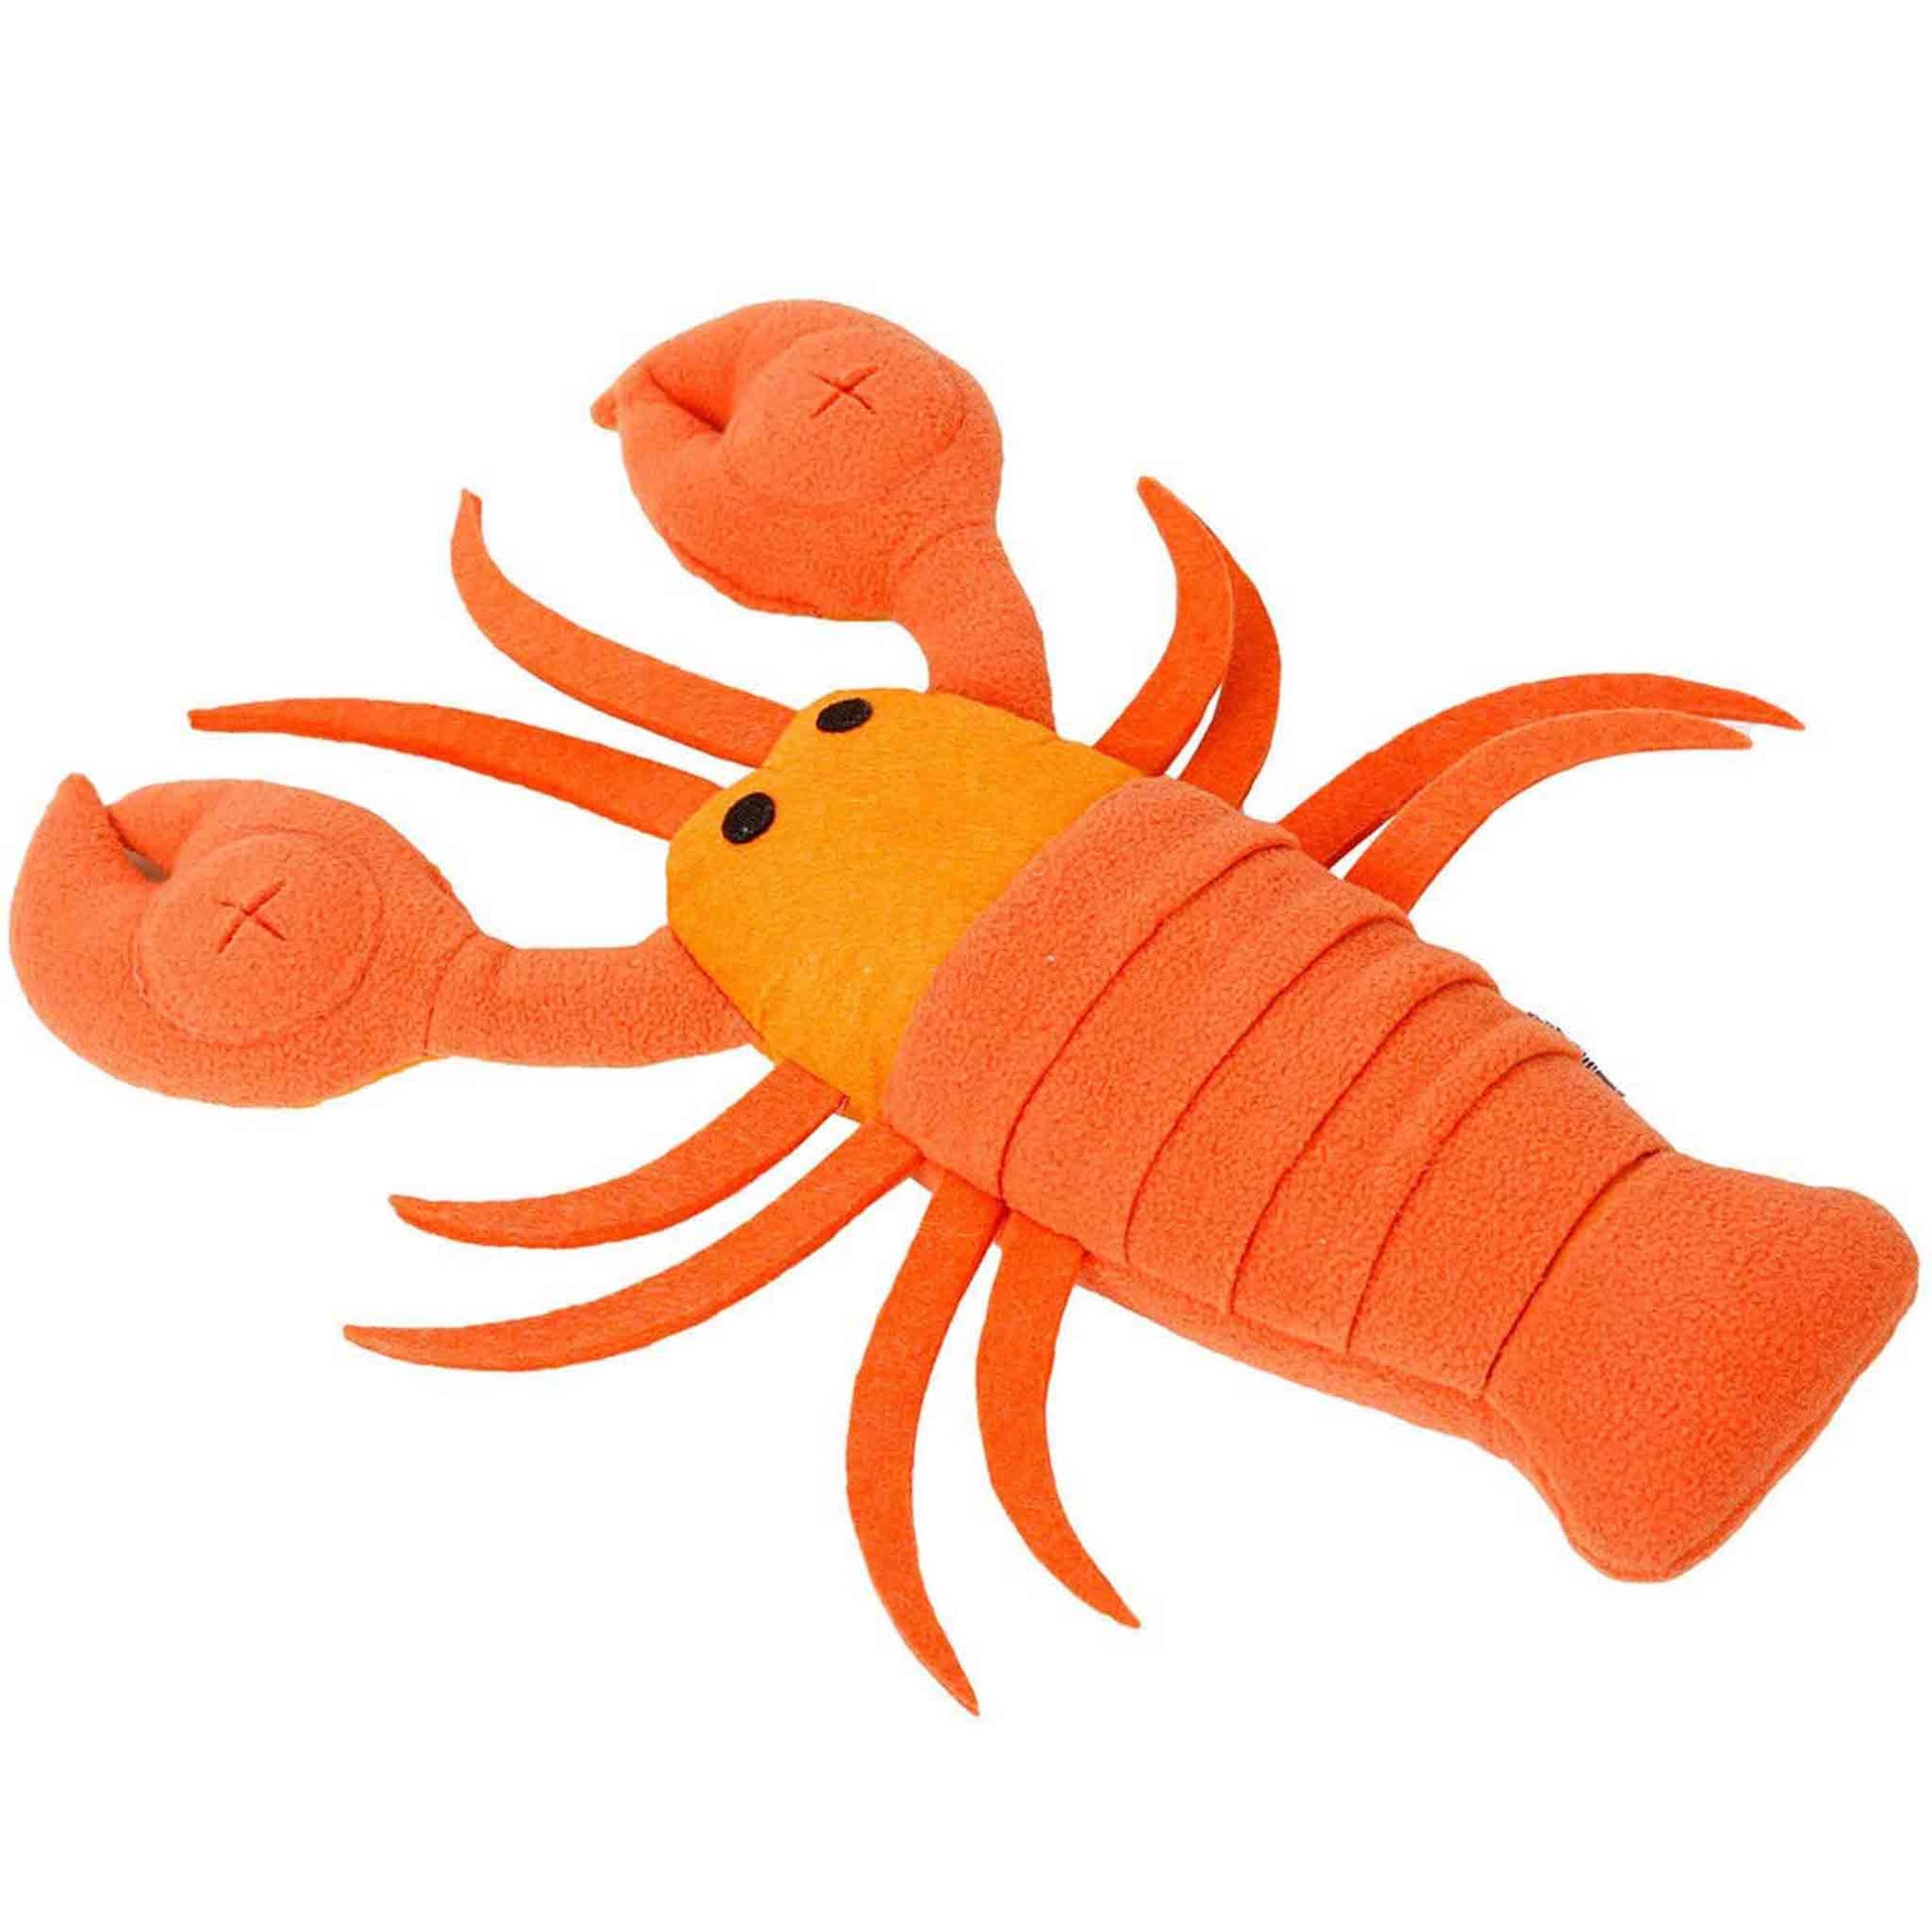 Lobster Snuffle Doy Toy from Floyd & Fleet